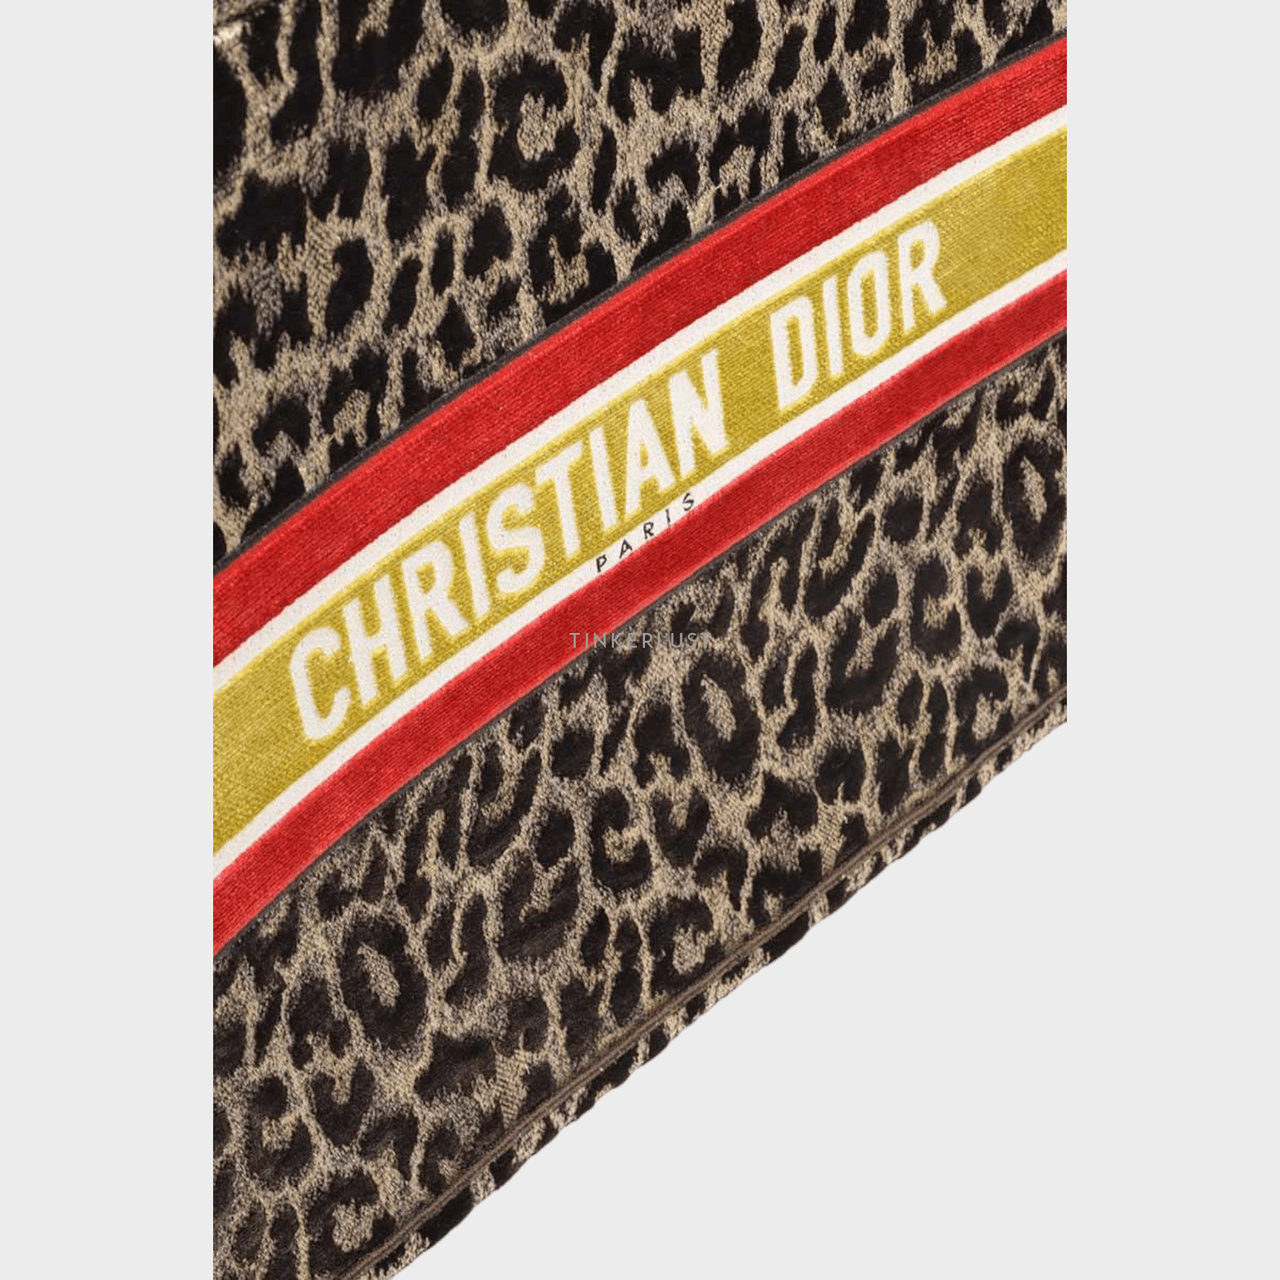 Christian Dior Book Tote Mizza Embroidery Bag in Beige Multicolor Velvet